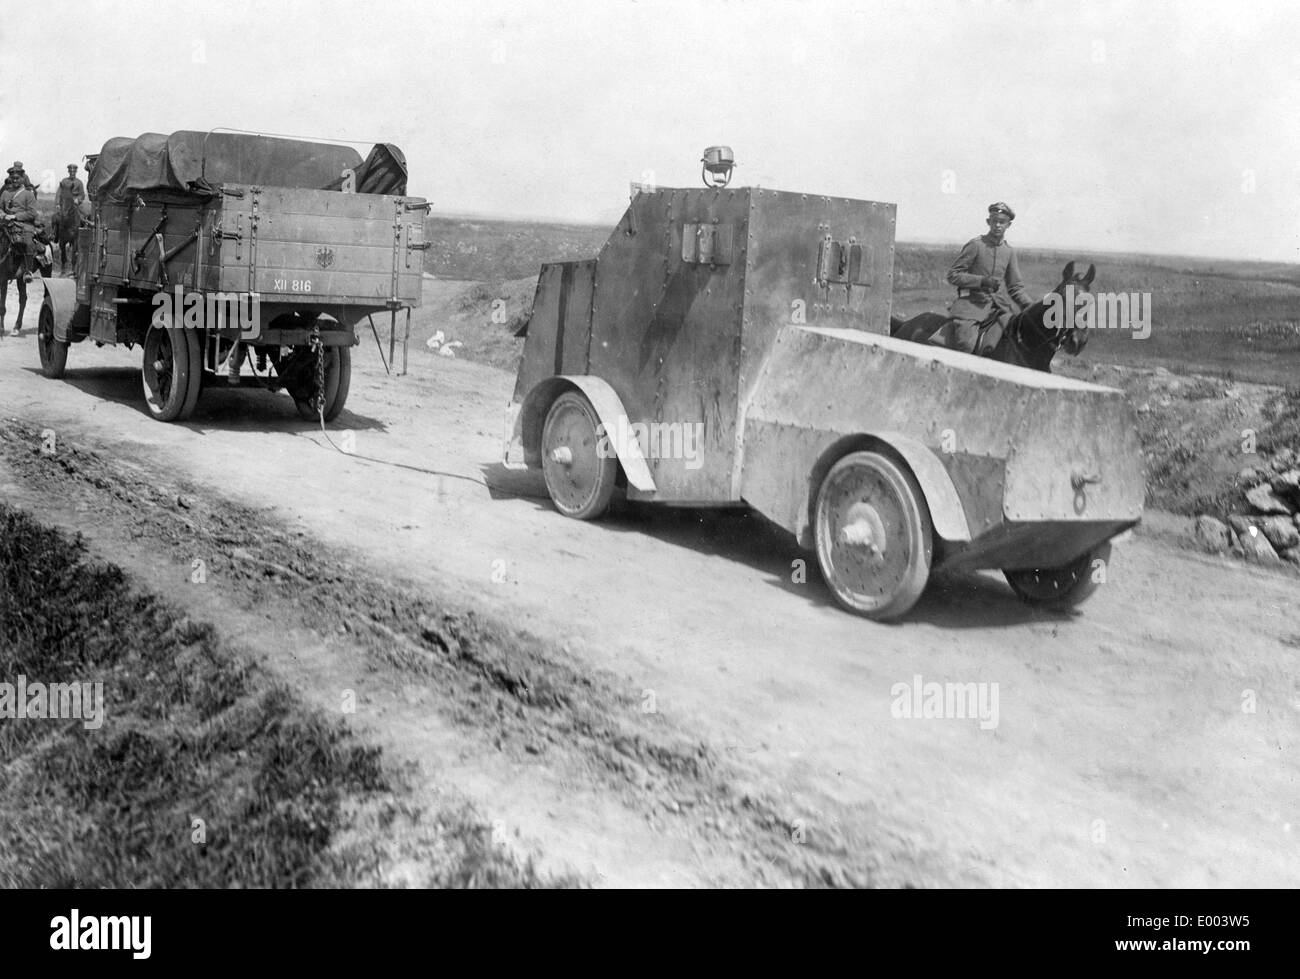 Transport de véhicules blindés russes faits prisonniers, 1917 Banque D'Images